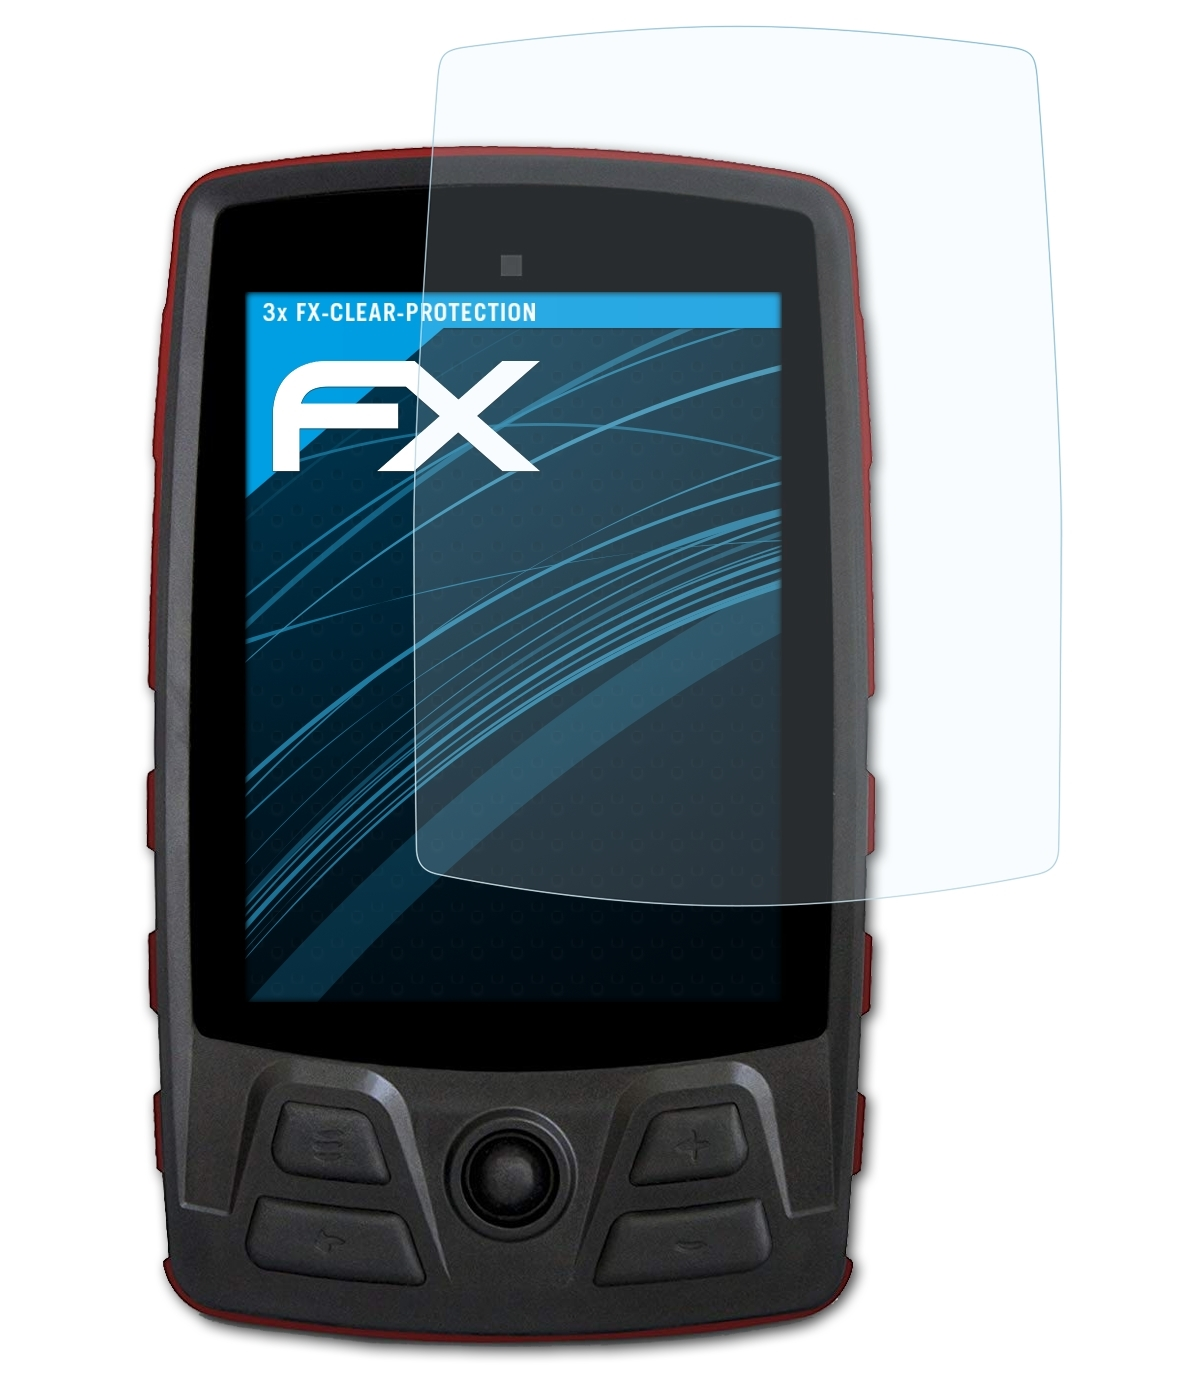 ATFOLIX 3x FX-Clear Displayschutz(für Aventura TwoNav Motor)